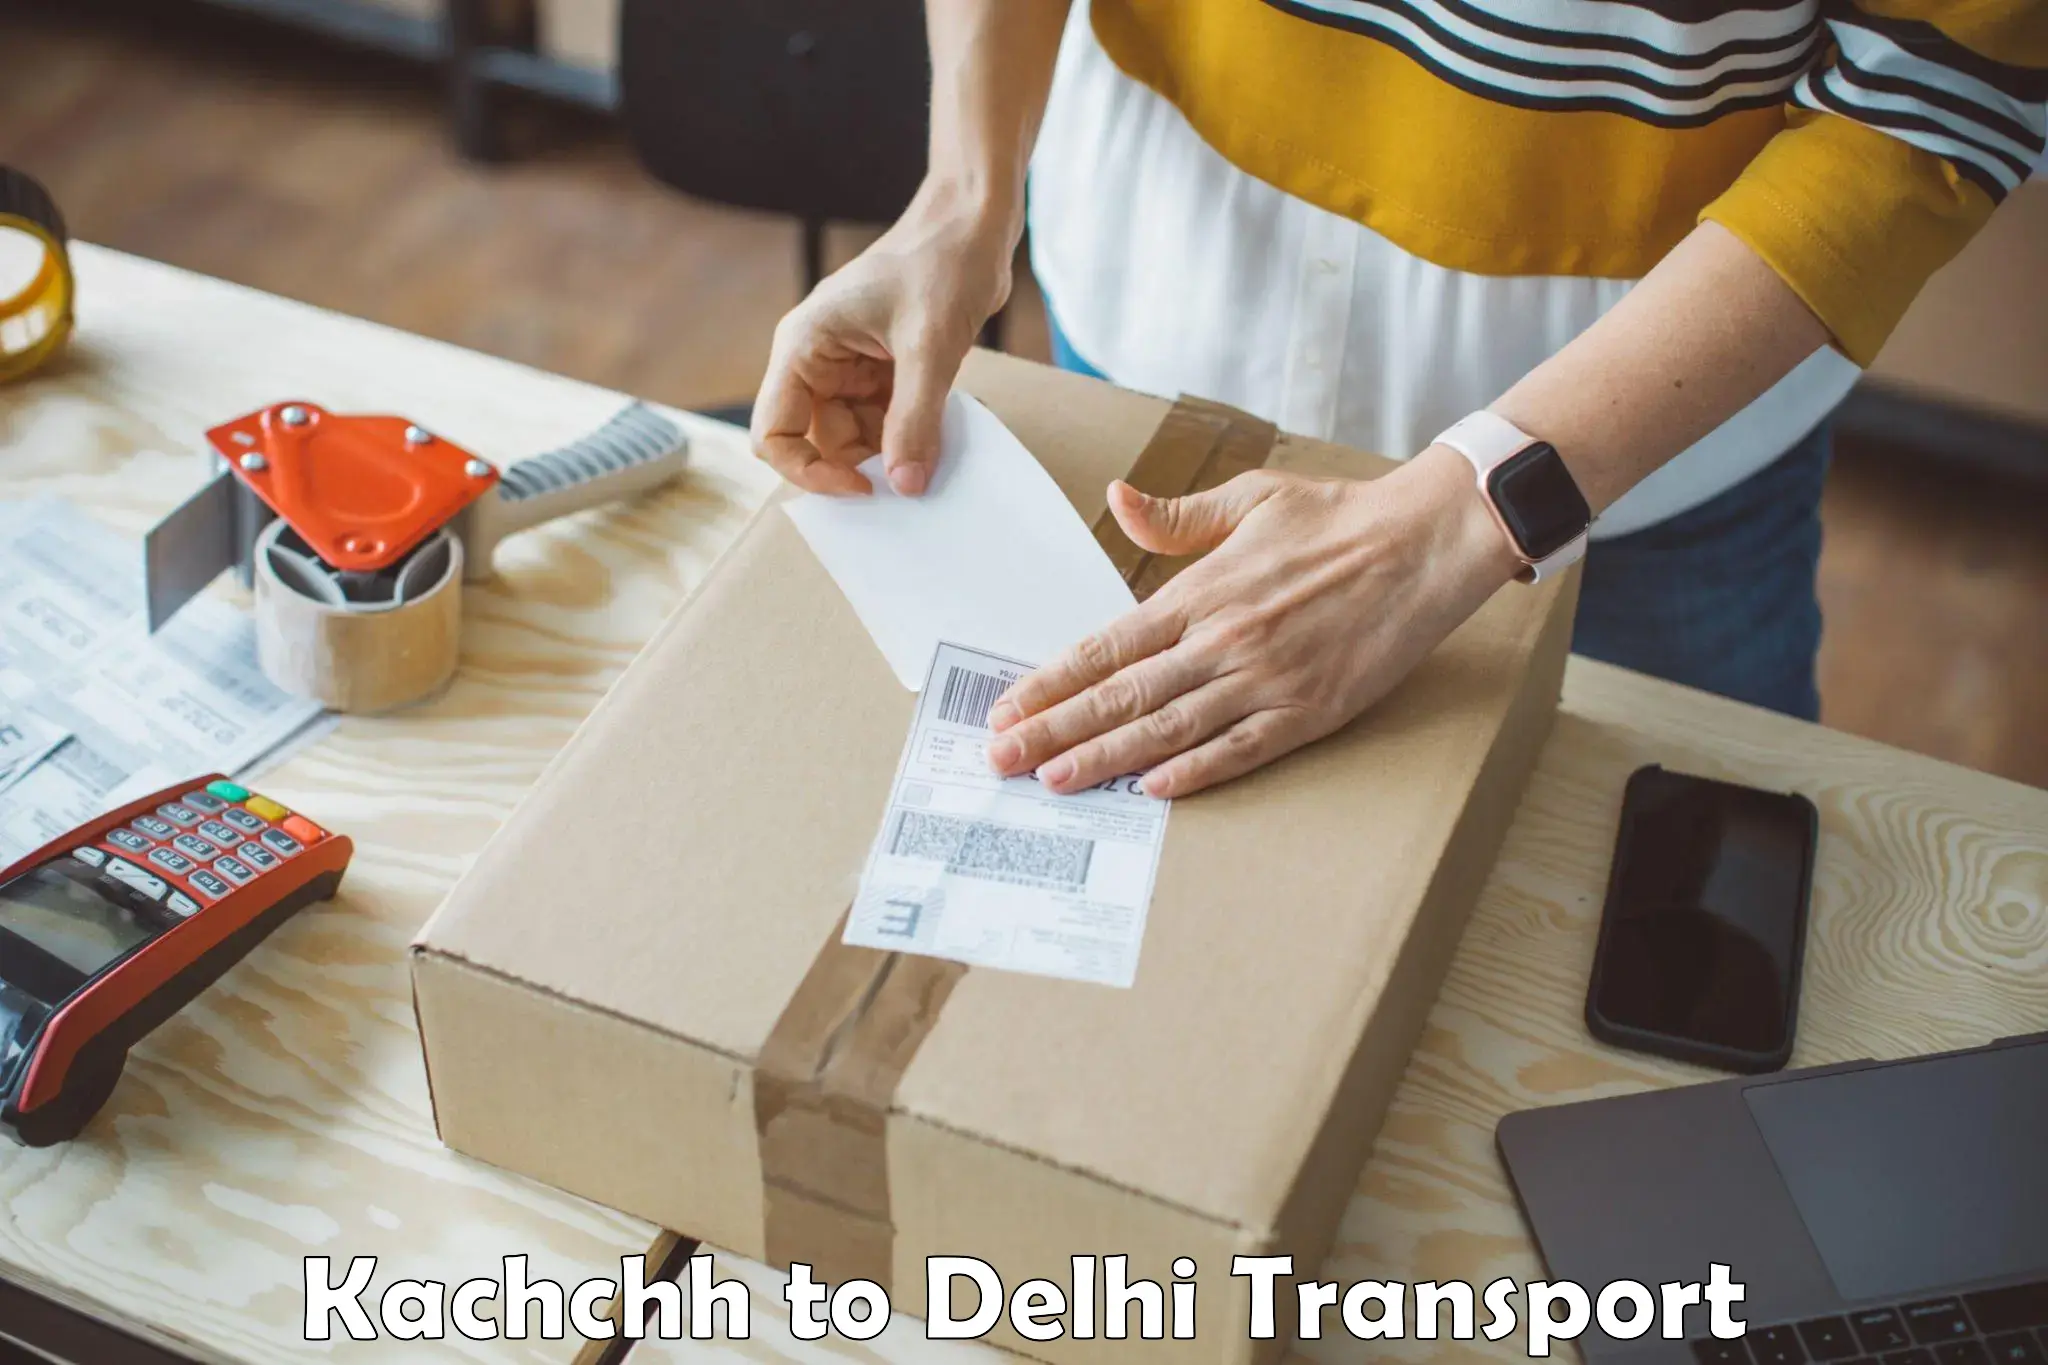 Vehicle transport services Kachchh to Delhi